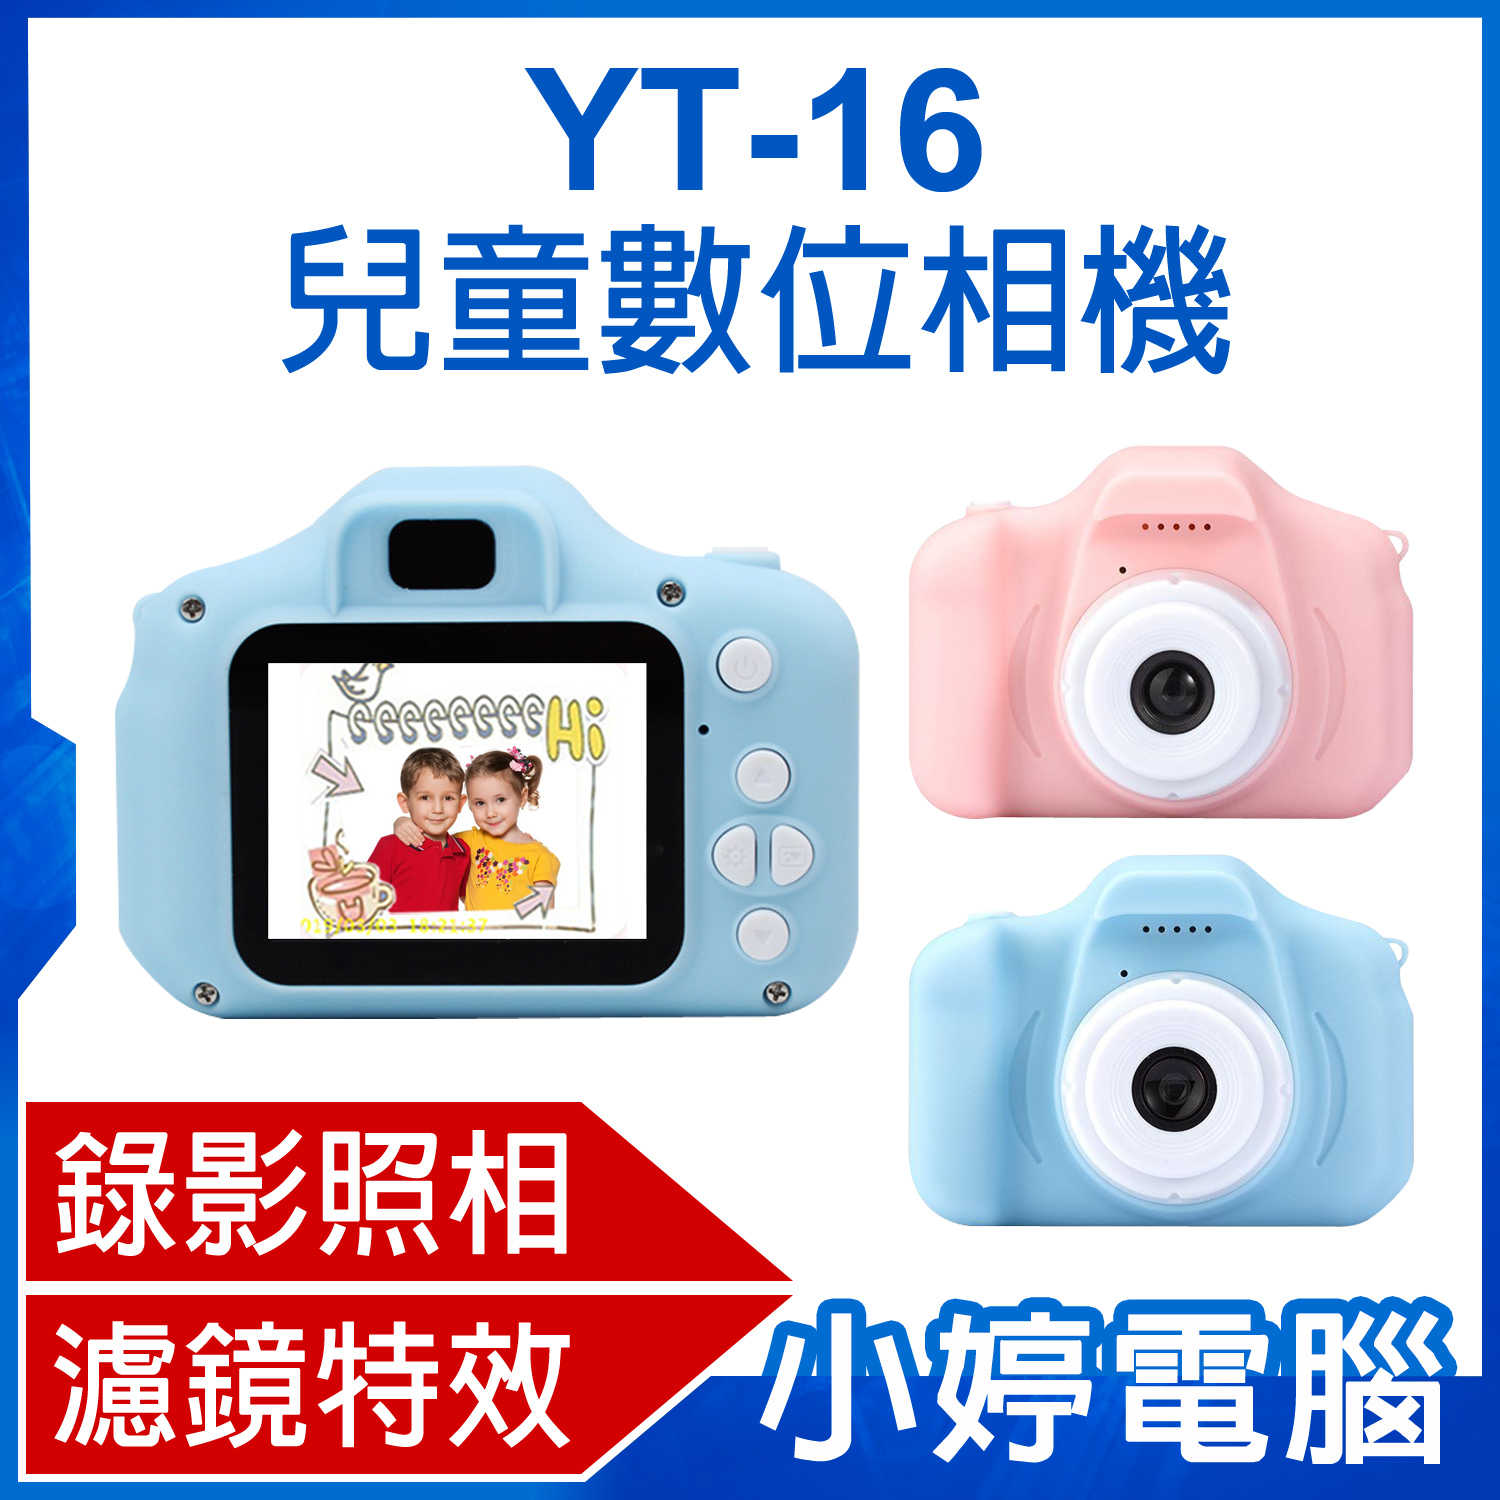 【小婷電腦】YT-16 兒童數位相機 2吋螢幕 4000萬畫素照相 濾鏡特效 小遊戲 TF卡32G